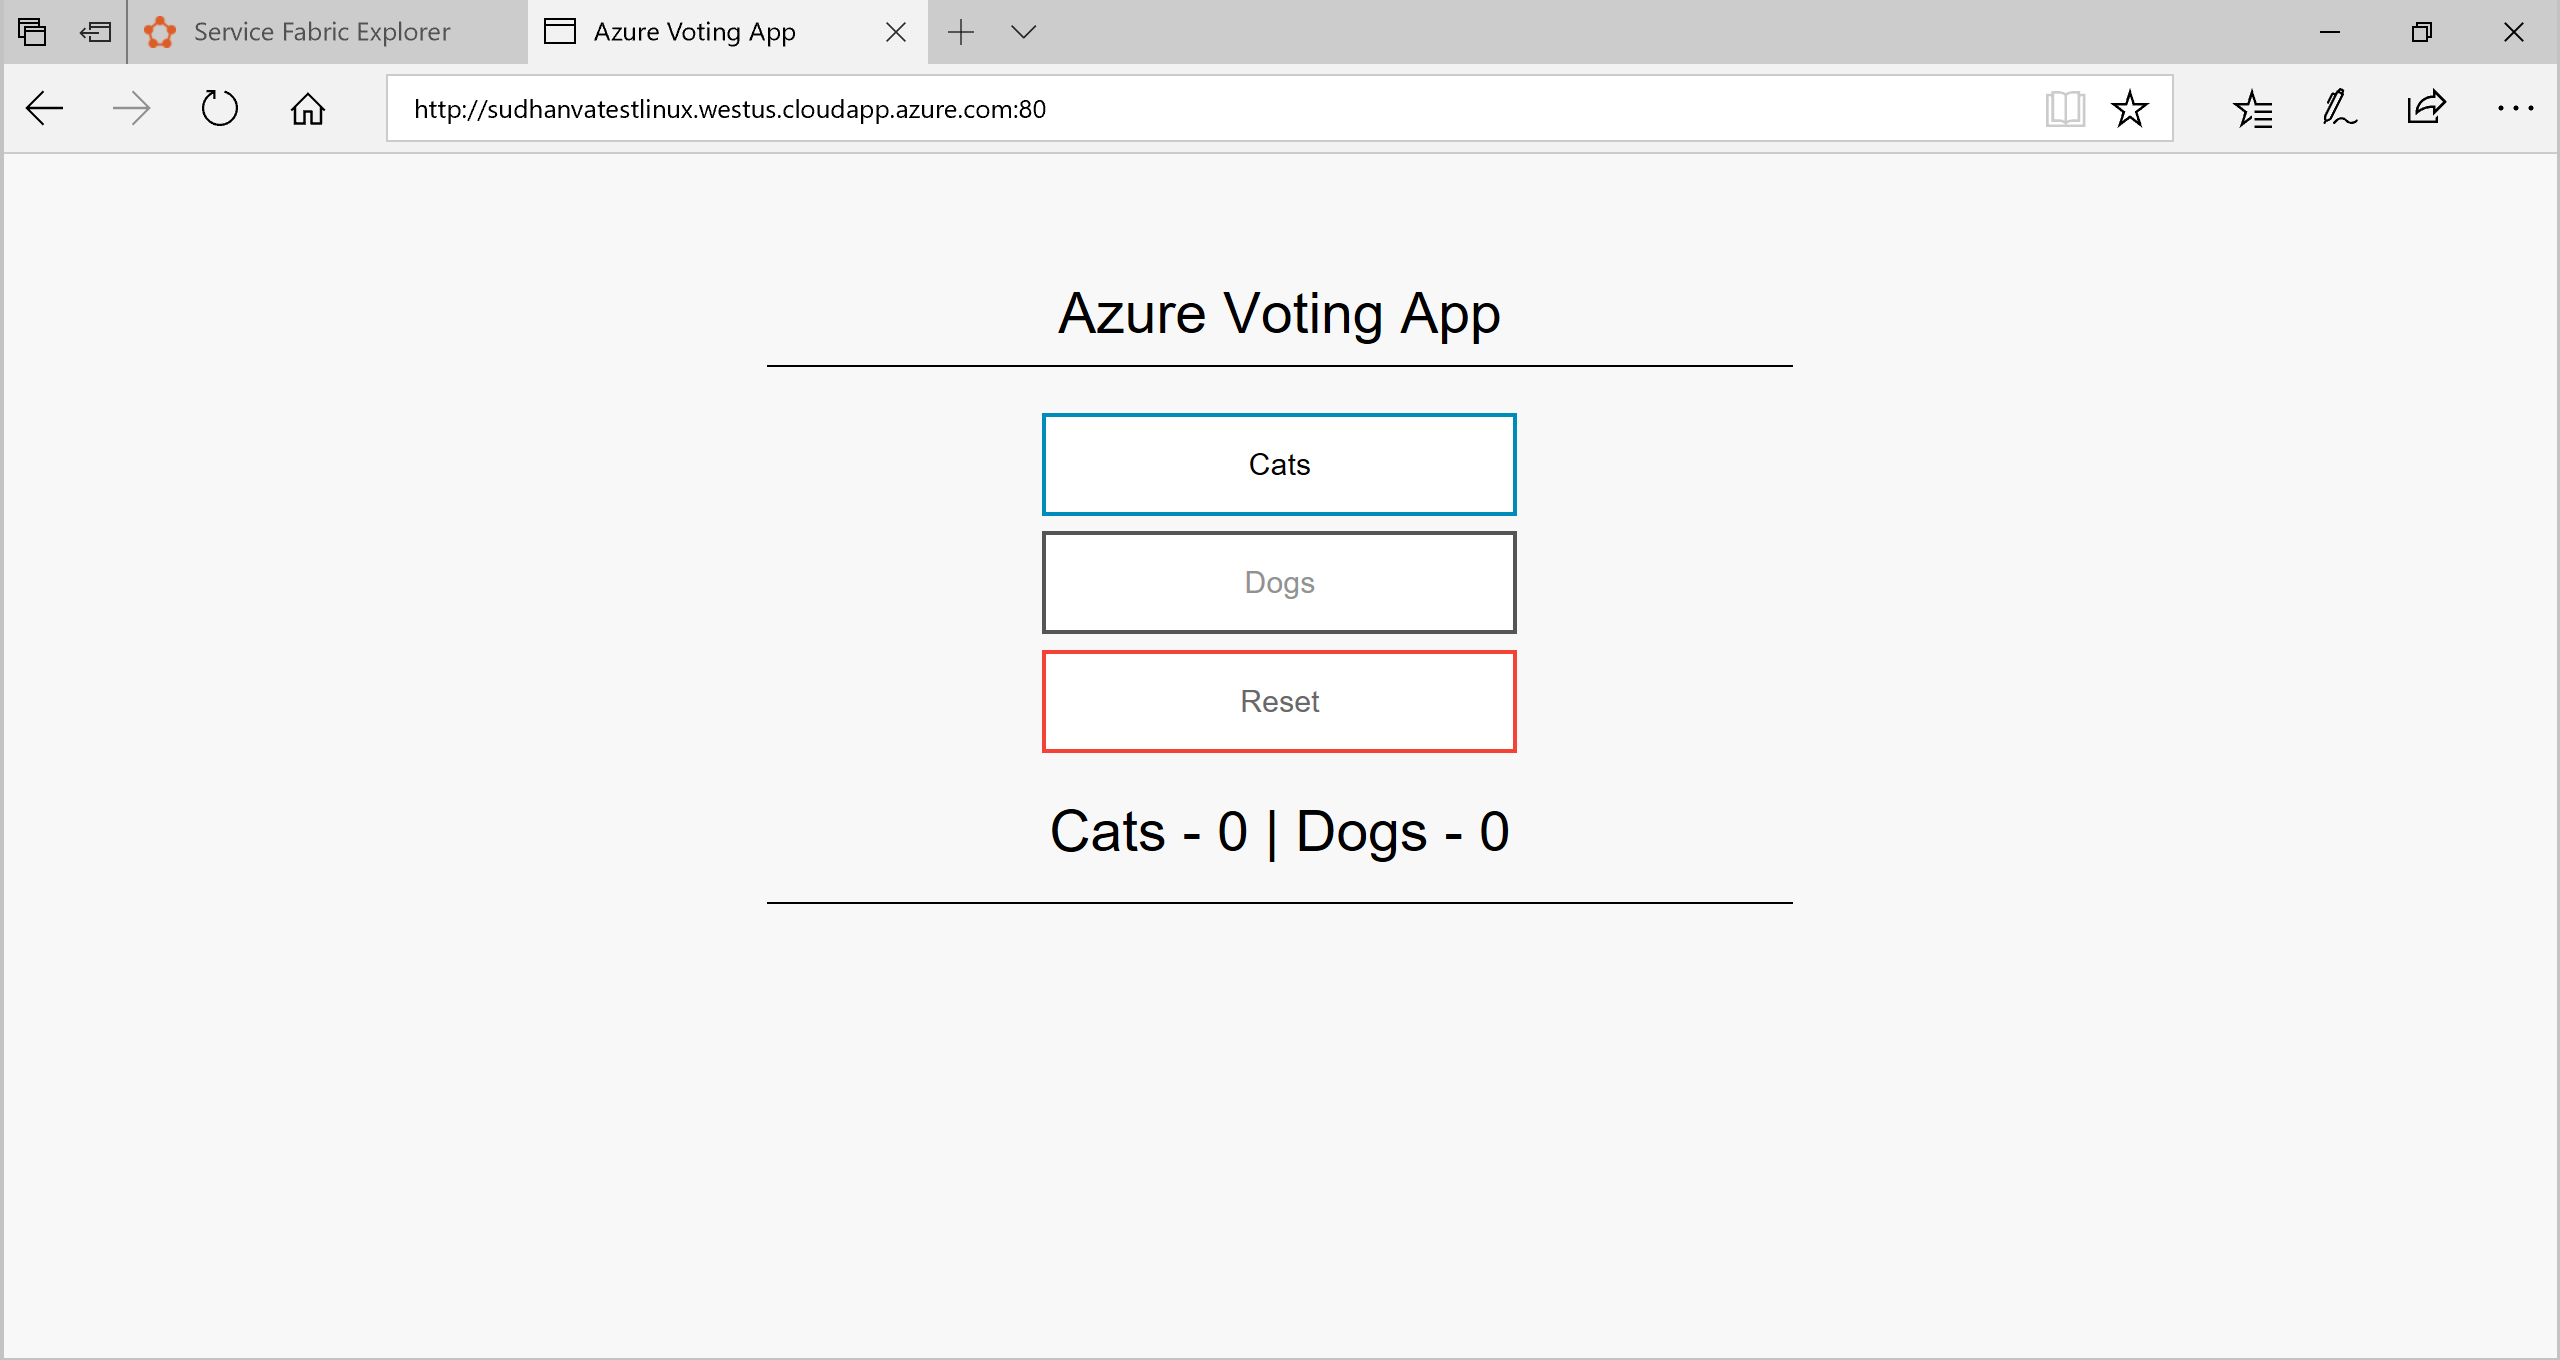 屏幕截图显示了包含“猫”、“狗”、“重置”和“合计”按钮的 Azure Voting 应用。